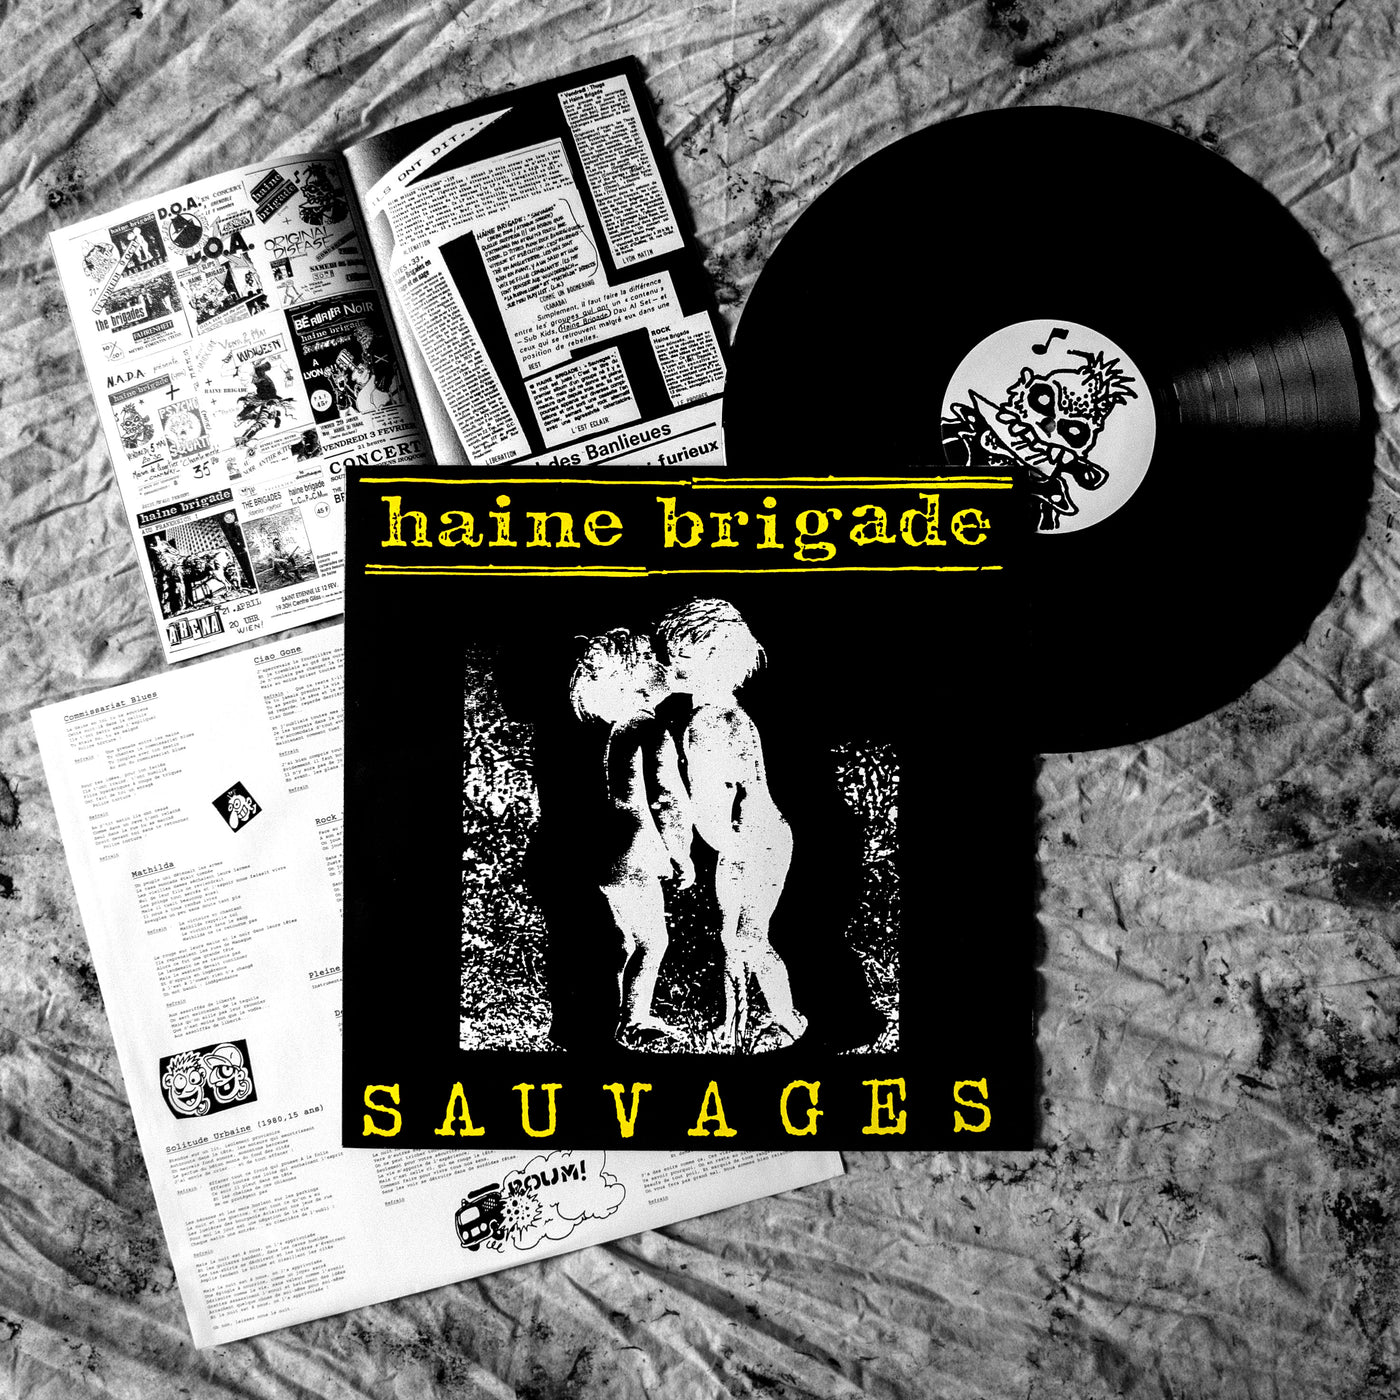 pochette de l'album "Sauvages" de HAINE BRIGADE (deux enfants s'embrassent), le disque vinyle avec sur le rond central un dessin d'un squelette punk avec un couteau dans les dents, pochette intérieure avec paroles et illustrations, et livret A5 avec textes, flyers, photos et dessins.